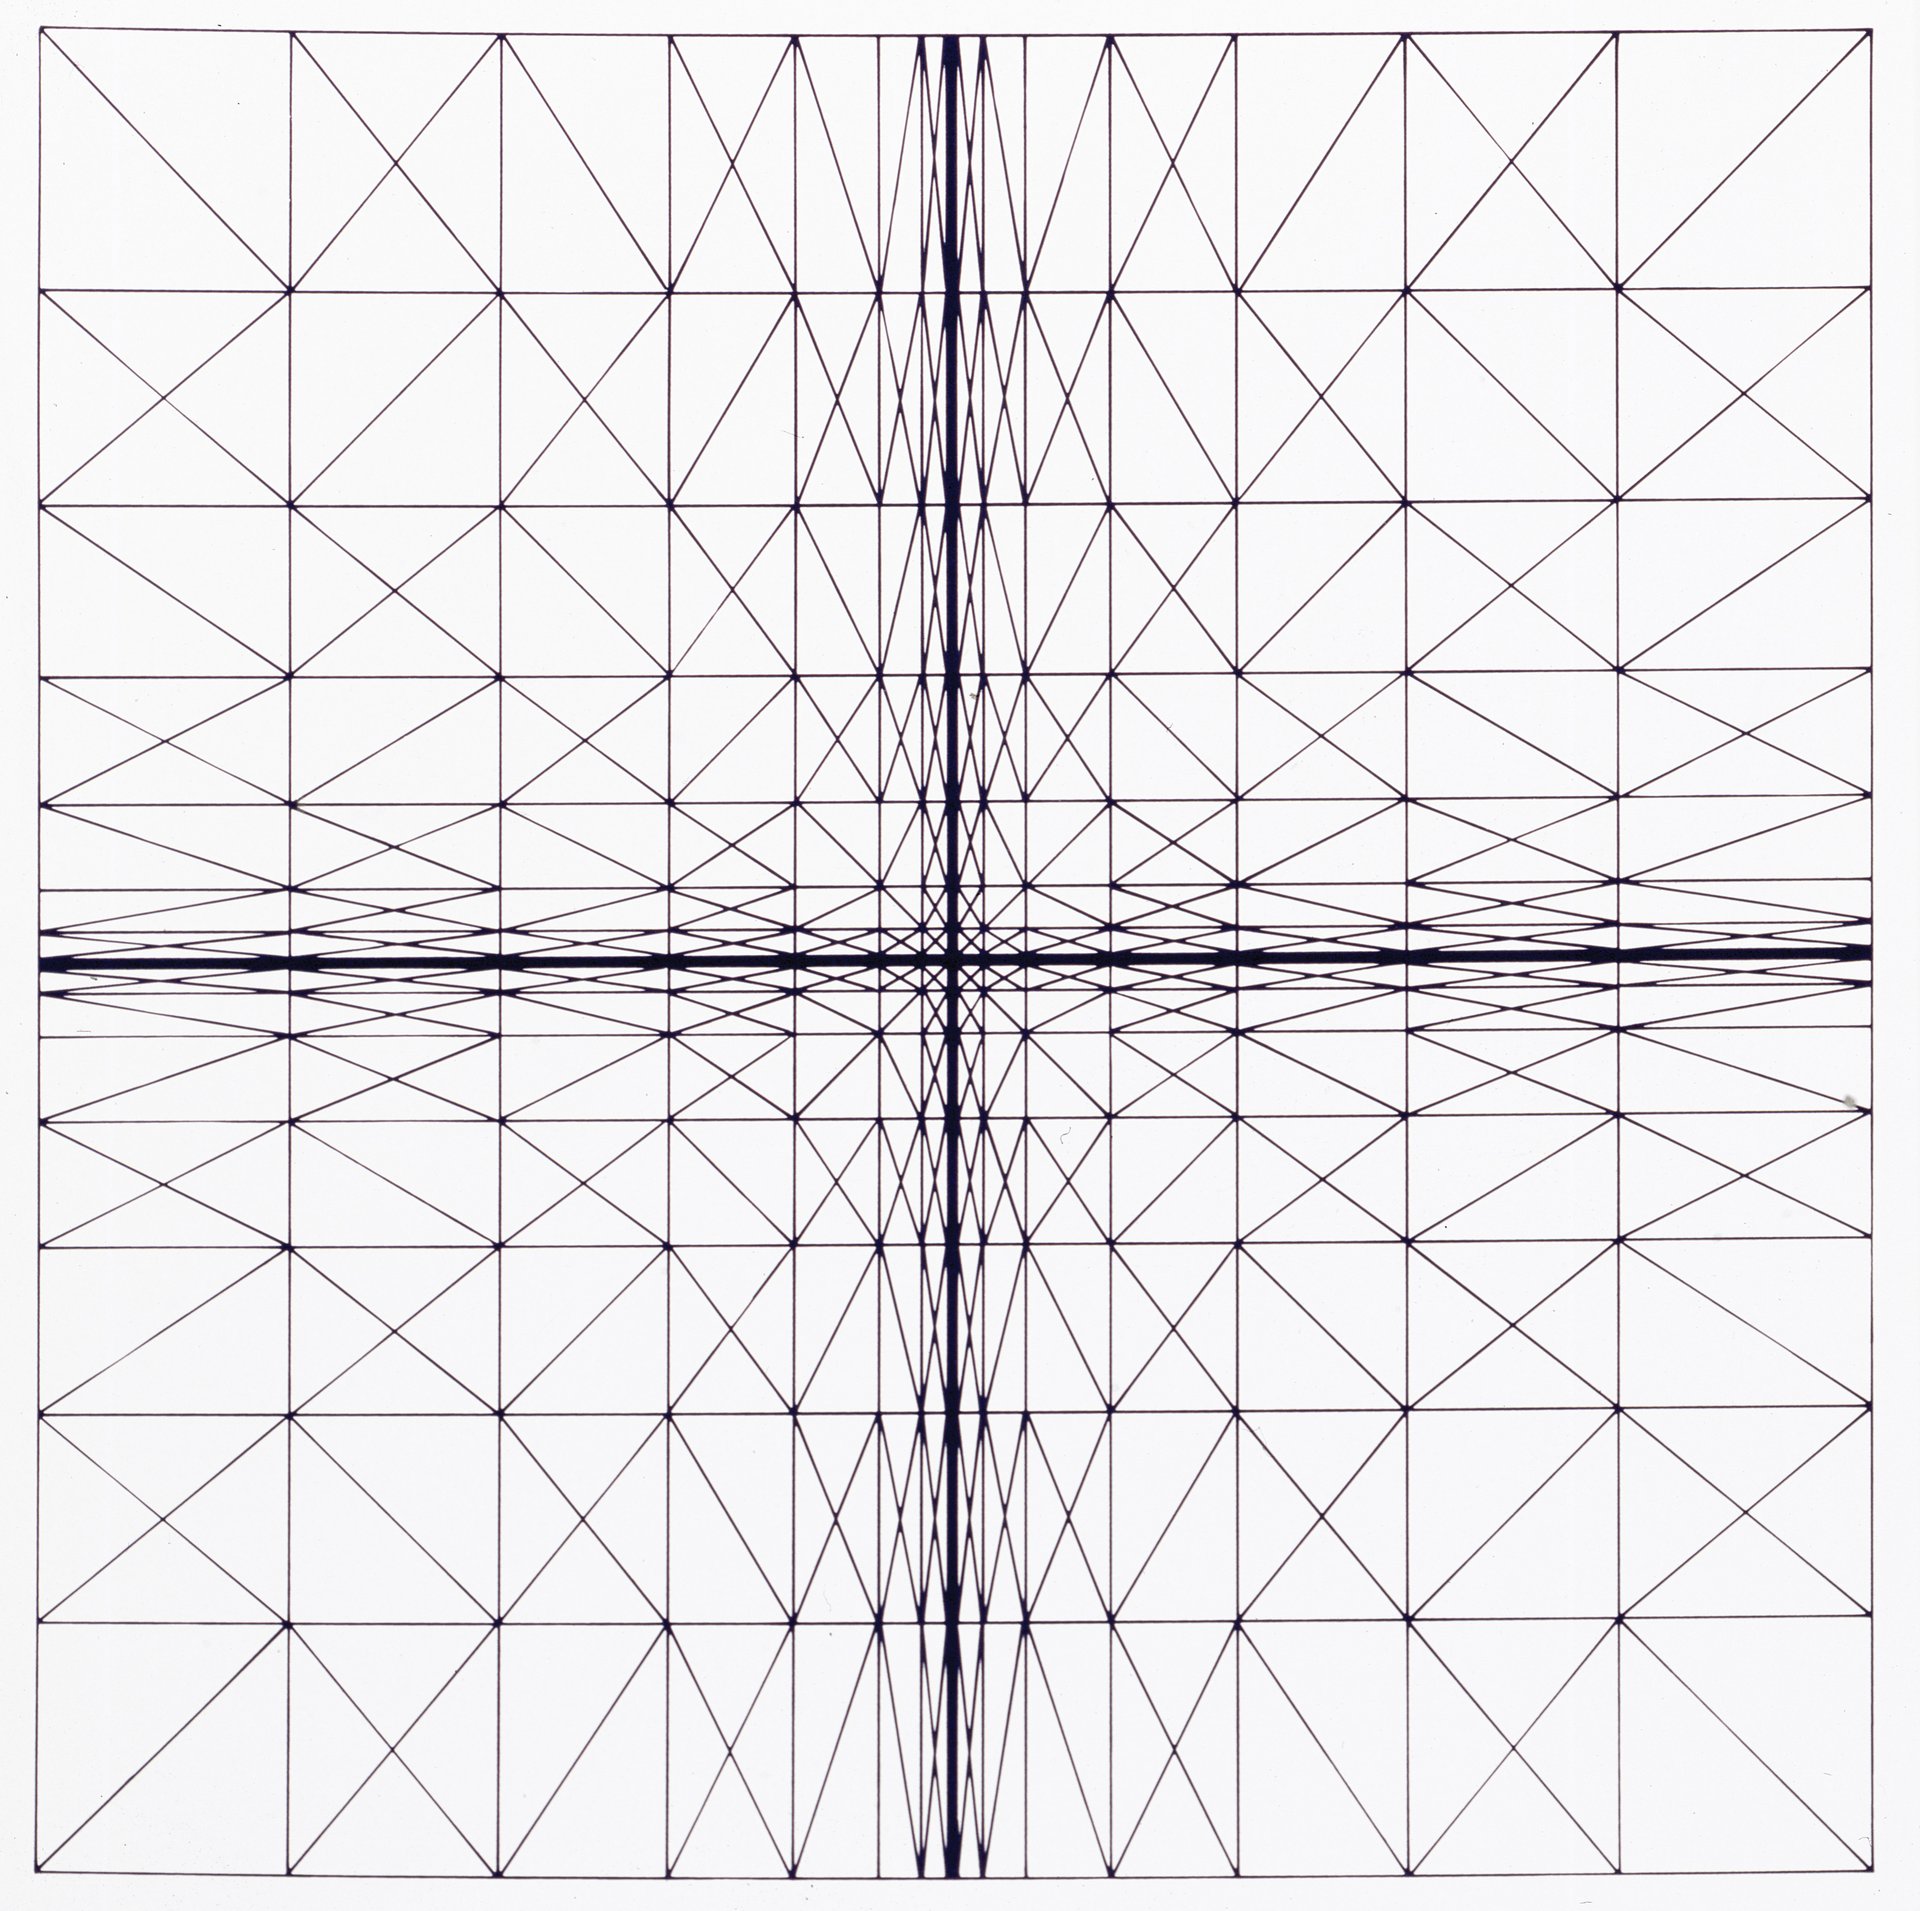 lev nusberg, &quot;kinetische zeichnung&quot; (1962), silkscreen on laid paper, 60 x 60 cm